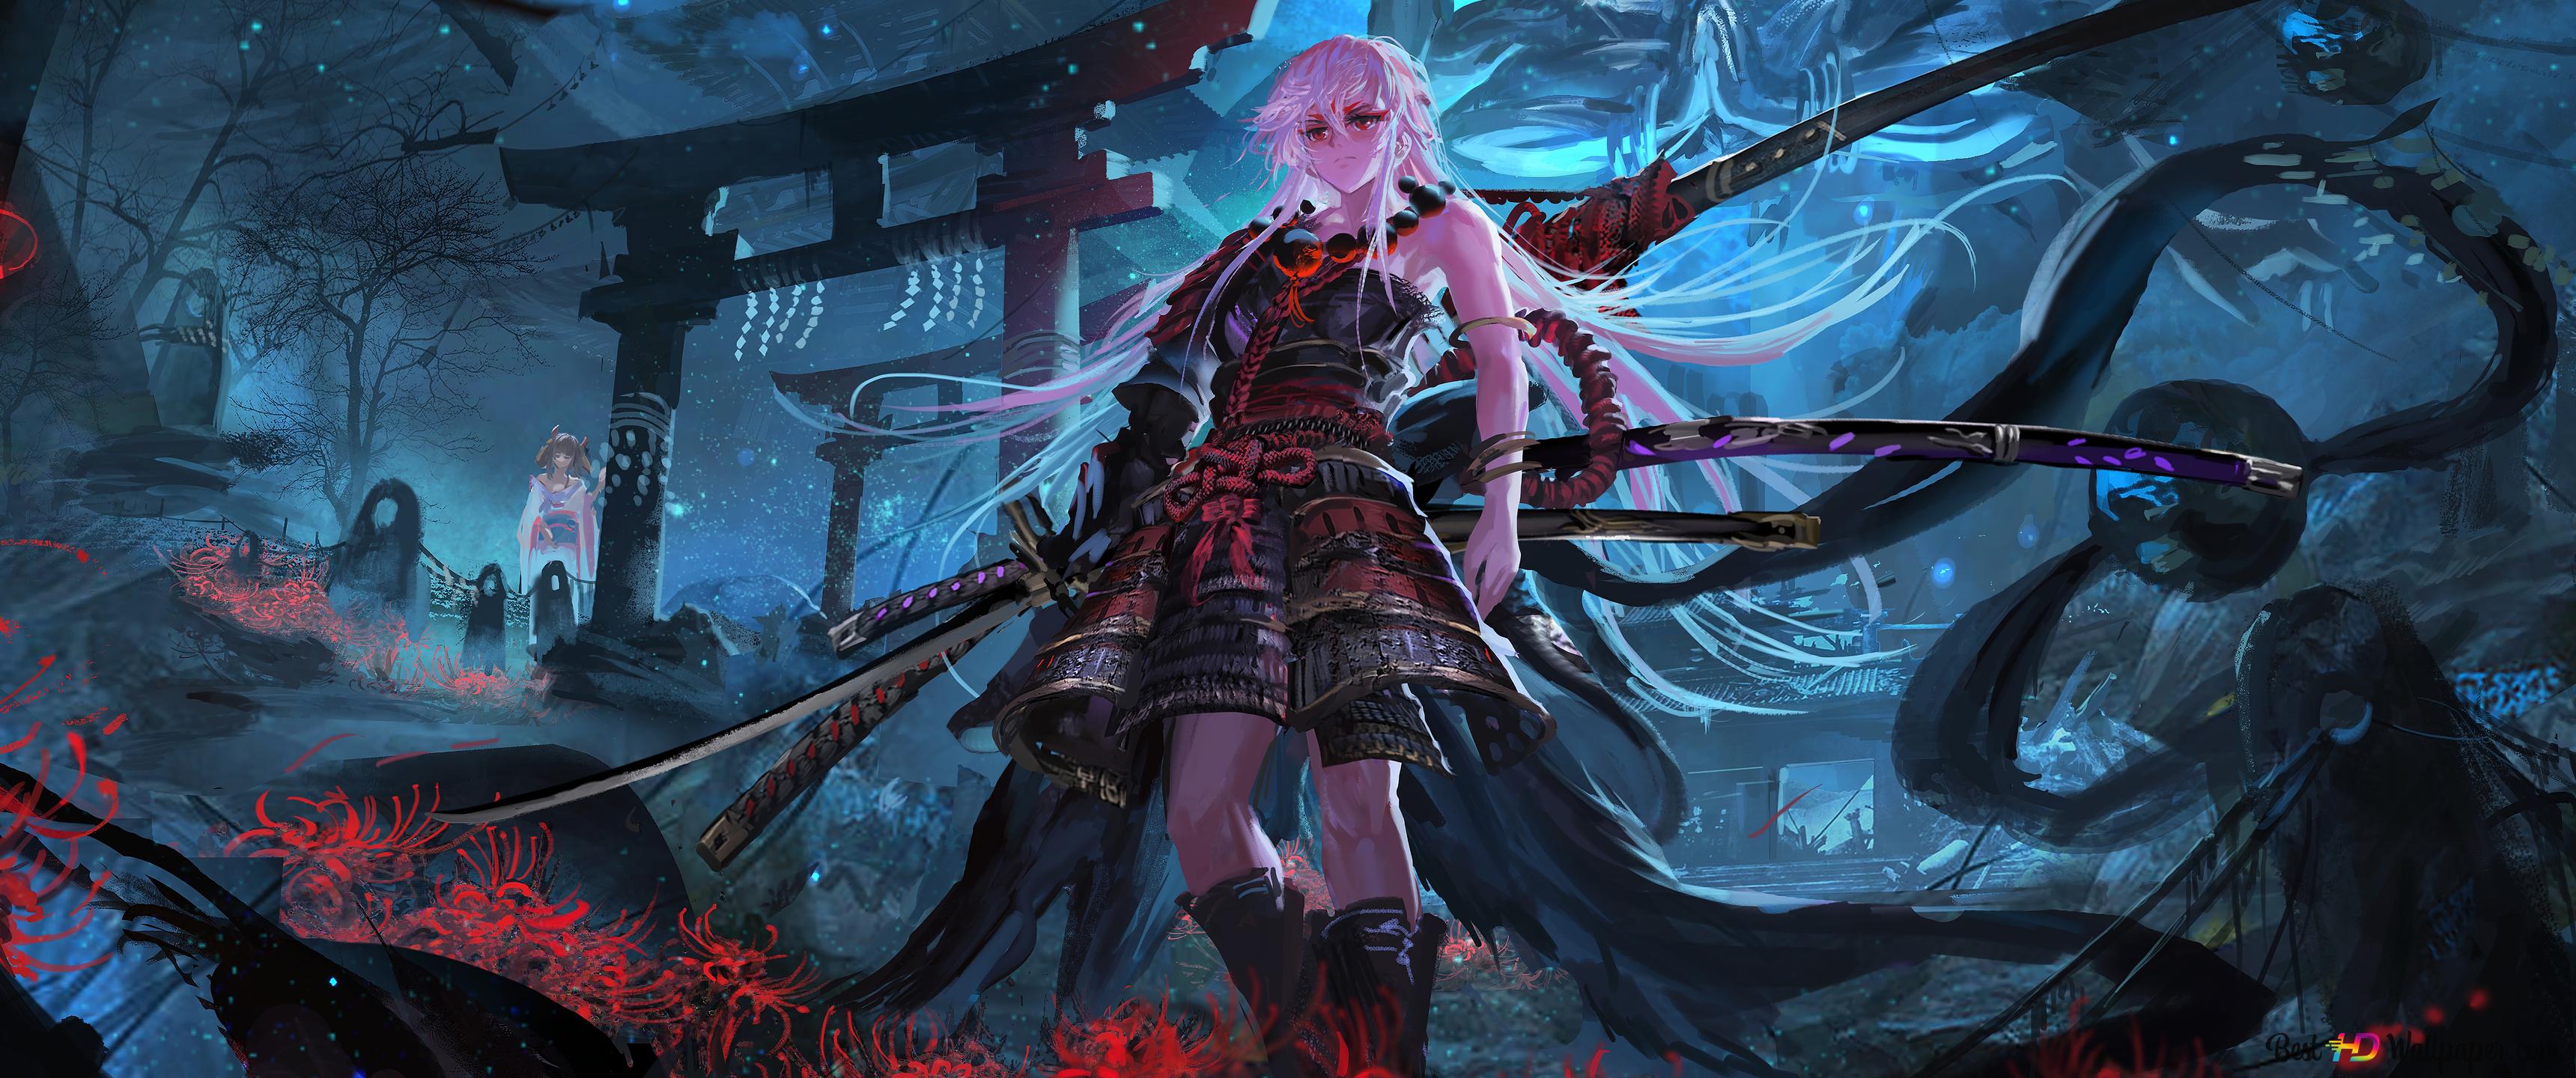 Anime Samurai Girl 8K wallpaper download